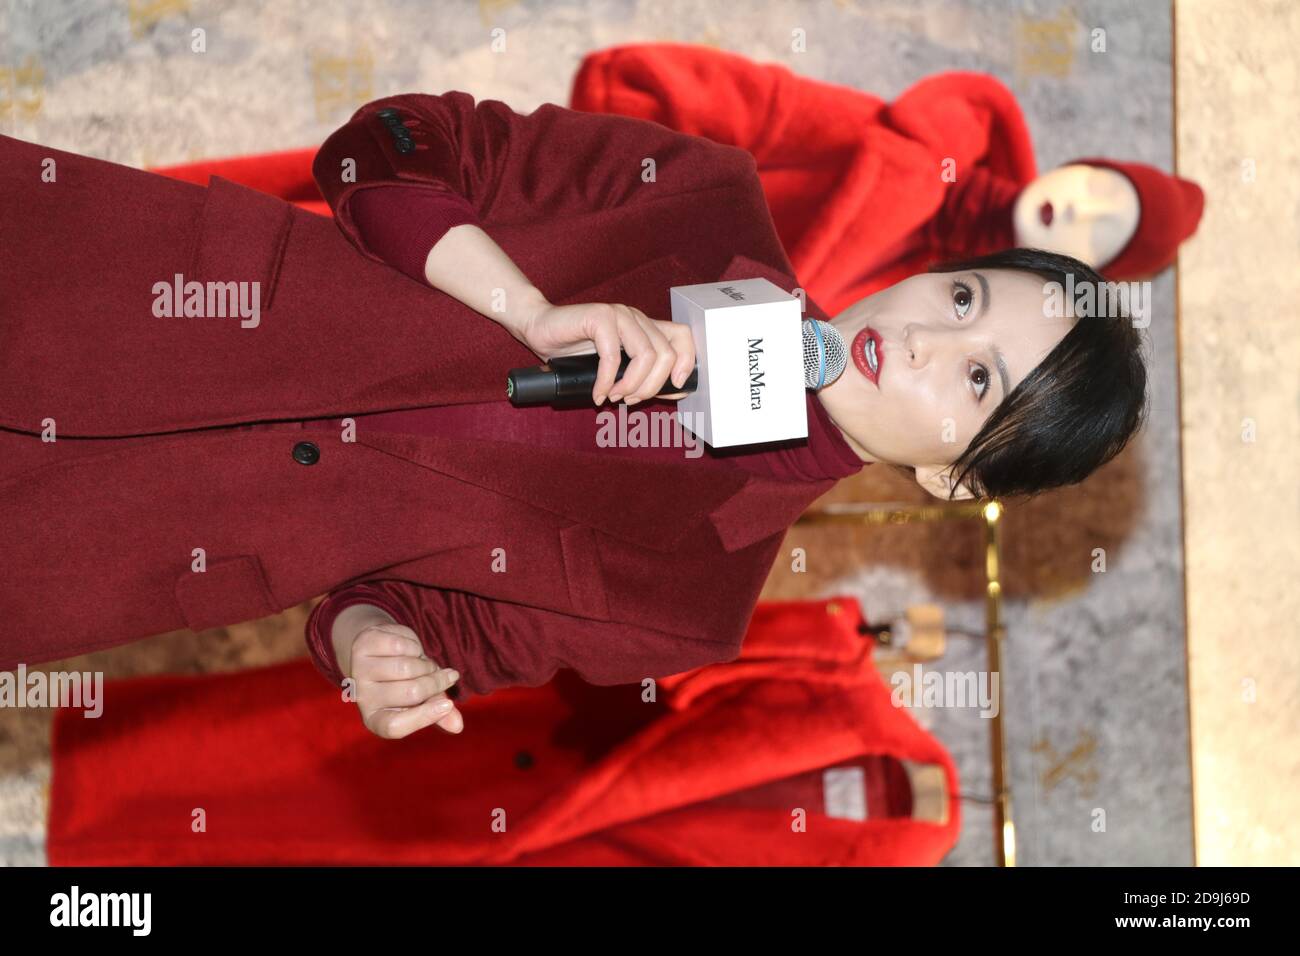 L'actrice chinoise Faye Yu participe à l'événement commercial MaxMara à Beijing, en Chine, le 16 octobre 2020. Banque D'Images